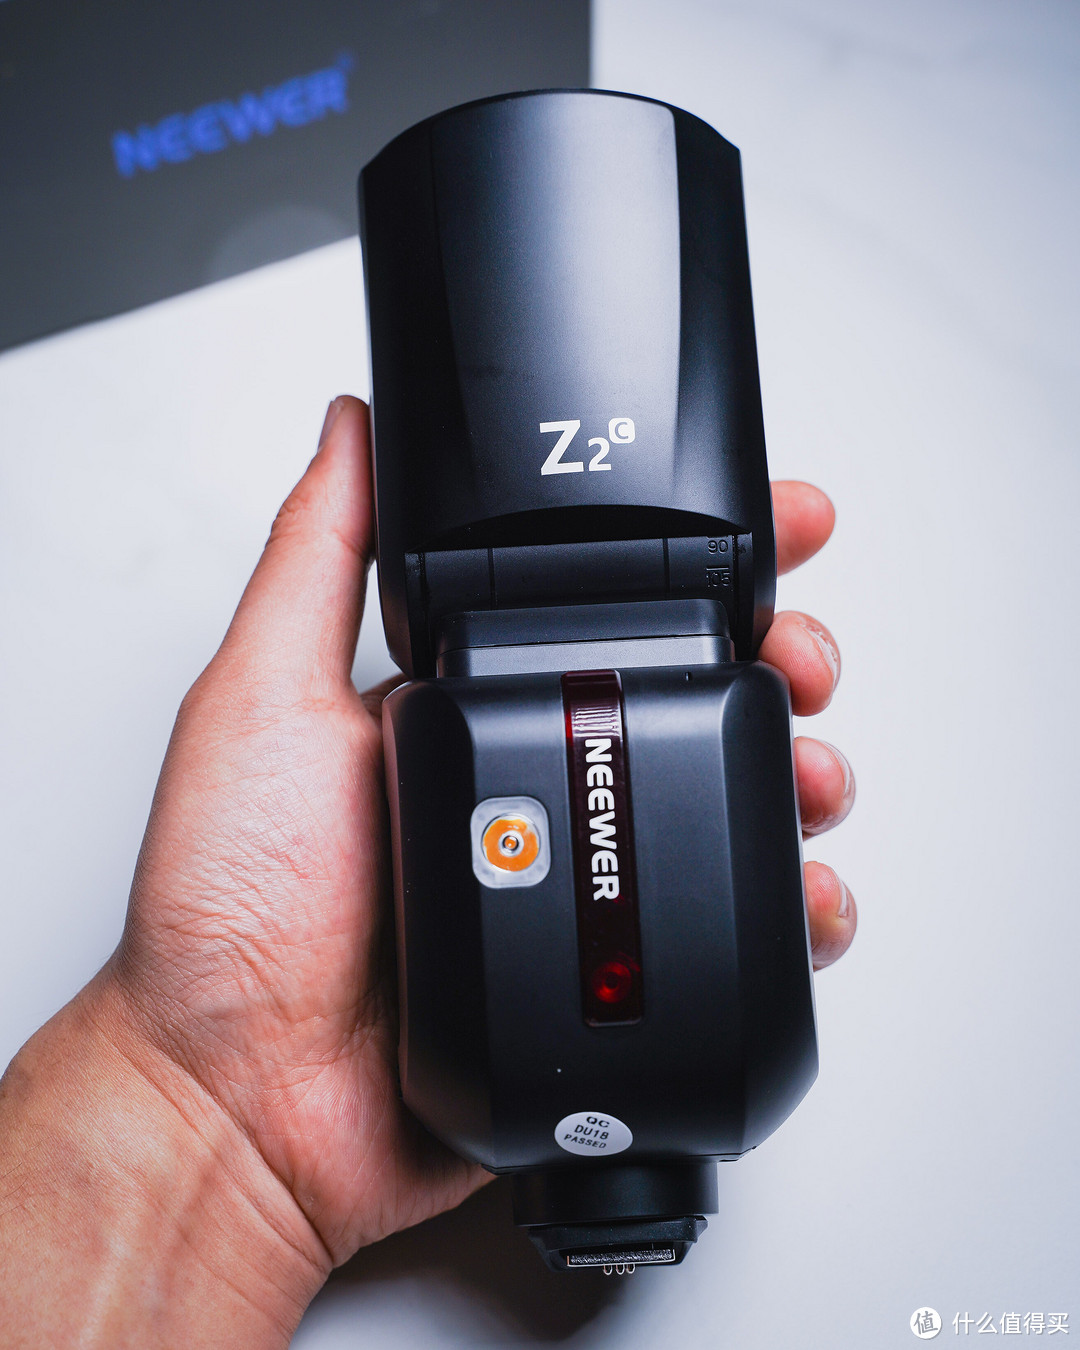 先别着急买镜头，这支NEEWER Z2C圆形闪光灯帮你省钱